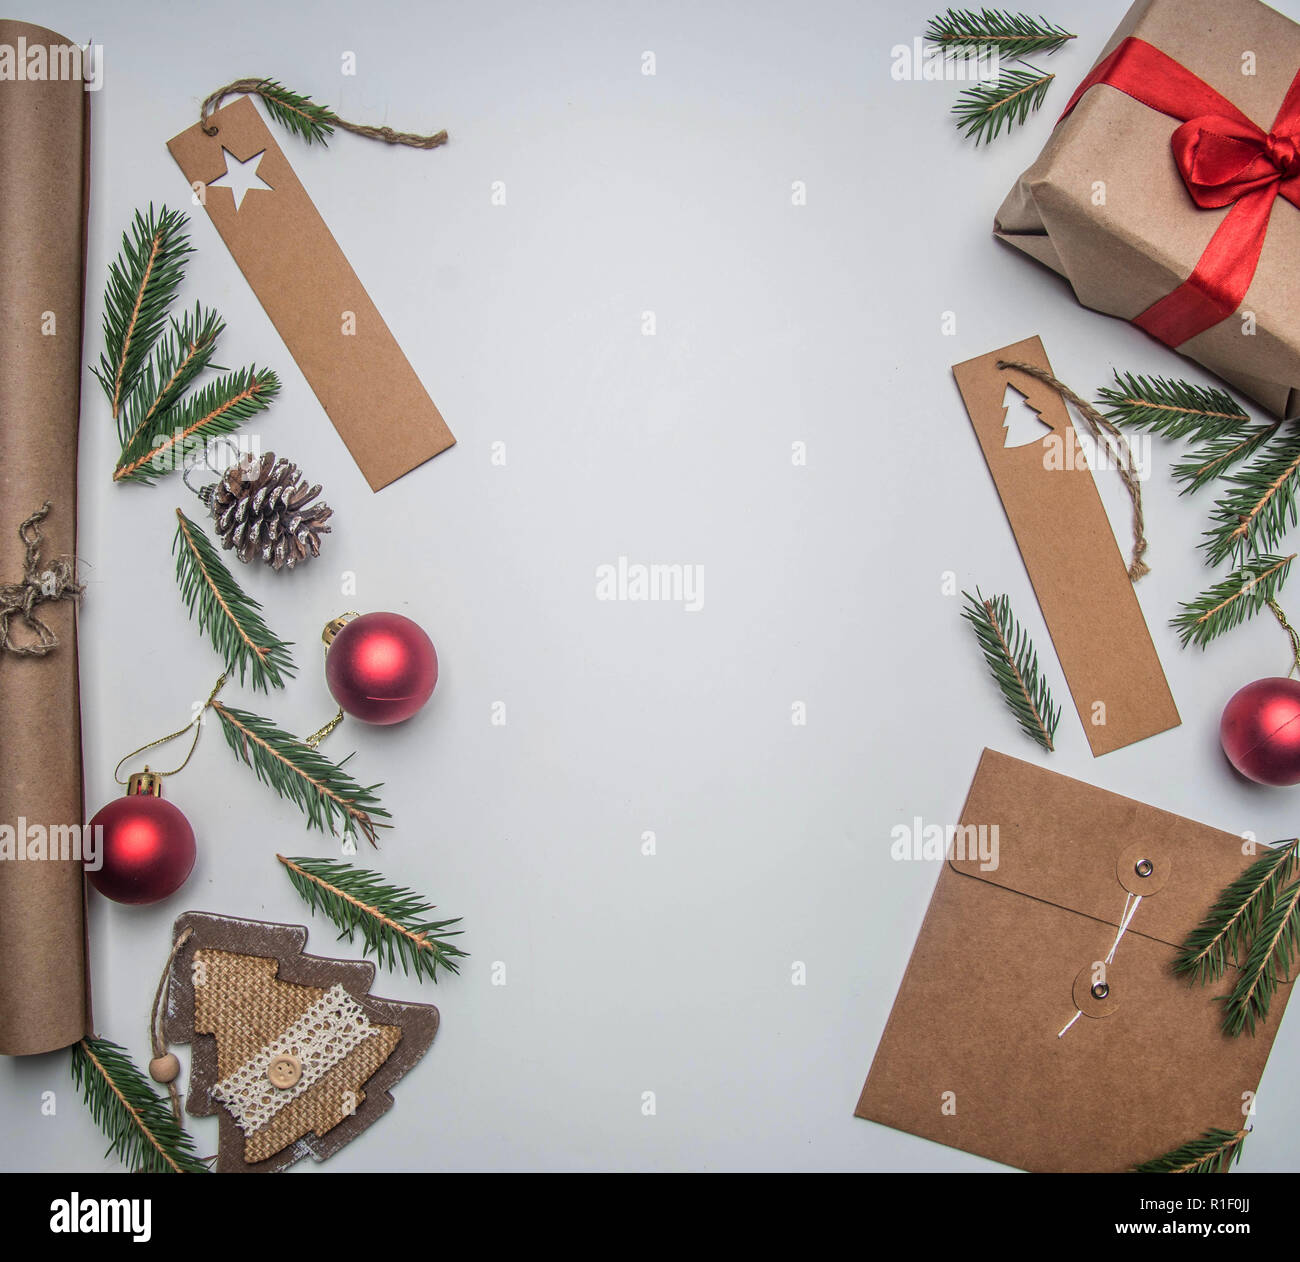 Navidad o Año Nuevo concepto de envoltura de regalos, papel, sobres, las  ramas de un árbol de Navidad, sobre un fondo blanco, lugar para sentar  planas de texto Fotografía de stock -